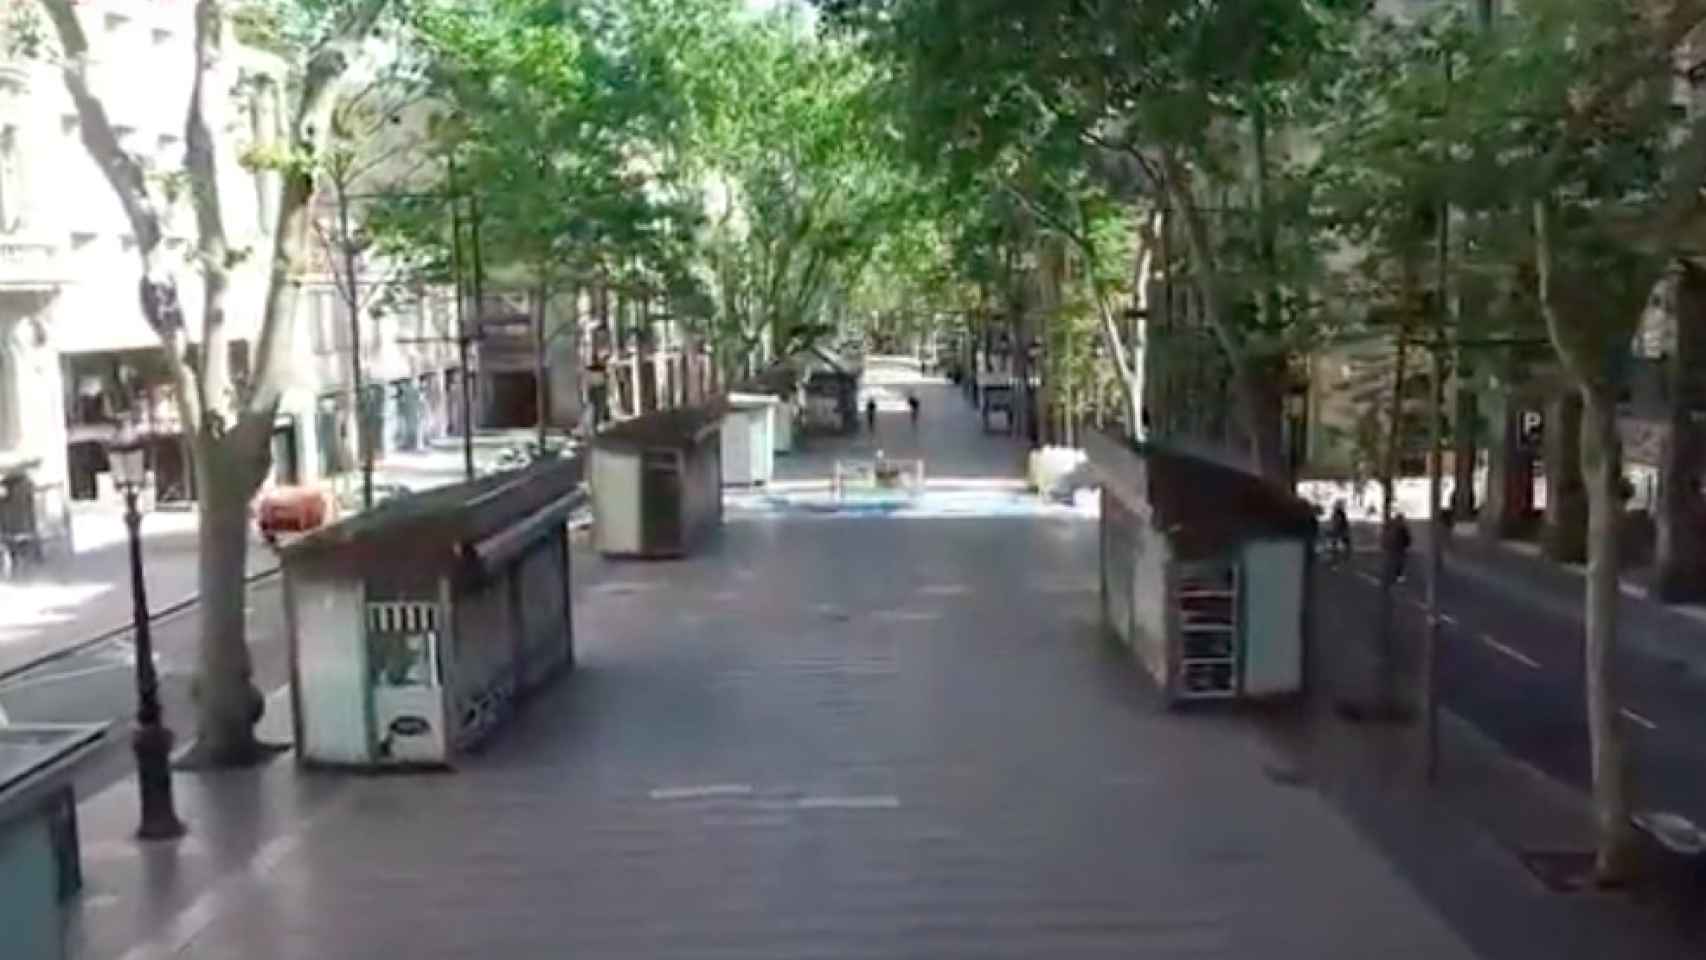 Captura del vídeo grabado por los Mossos d'Esquadra donde se aprecia la Rambla vacía / MOSSOS